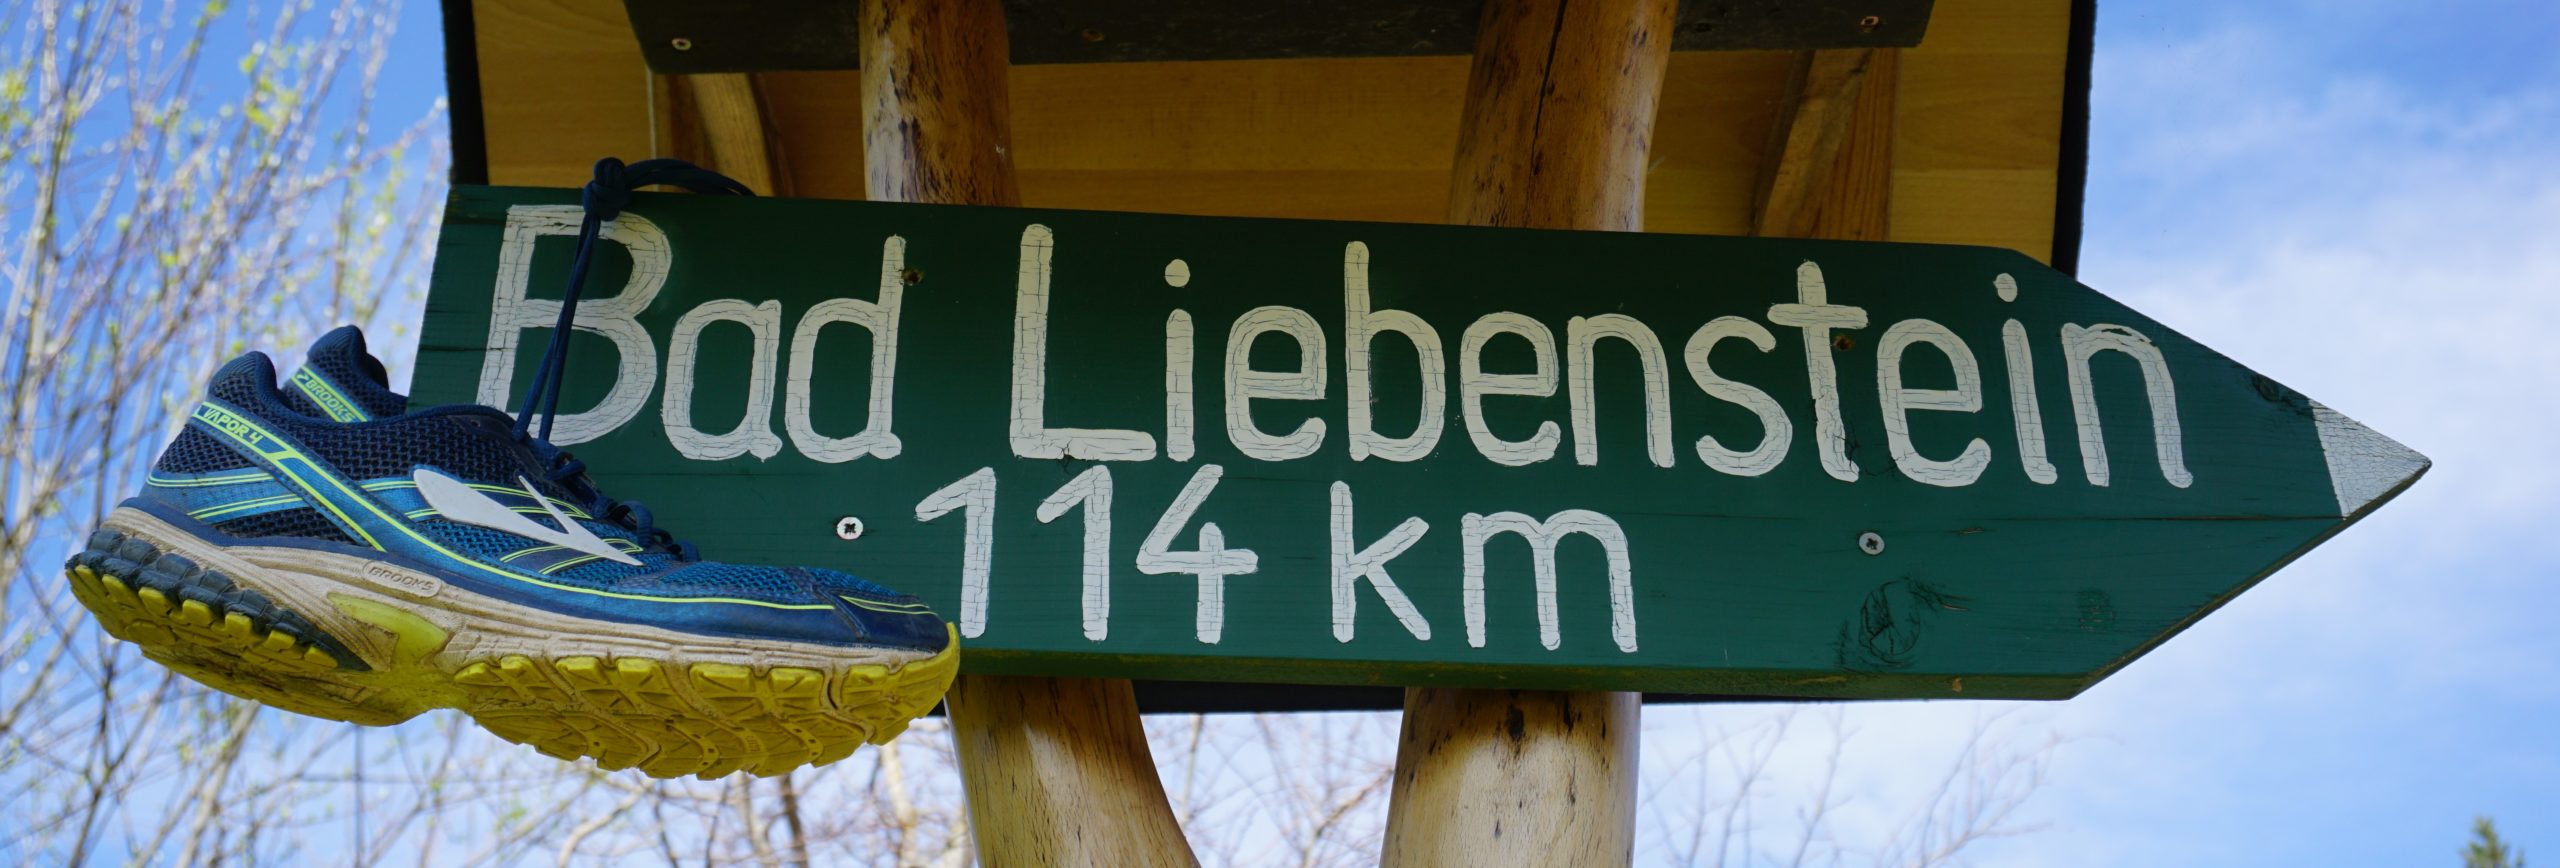 Schilderbaum Bad Liebenstein Stafette 114 km